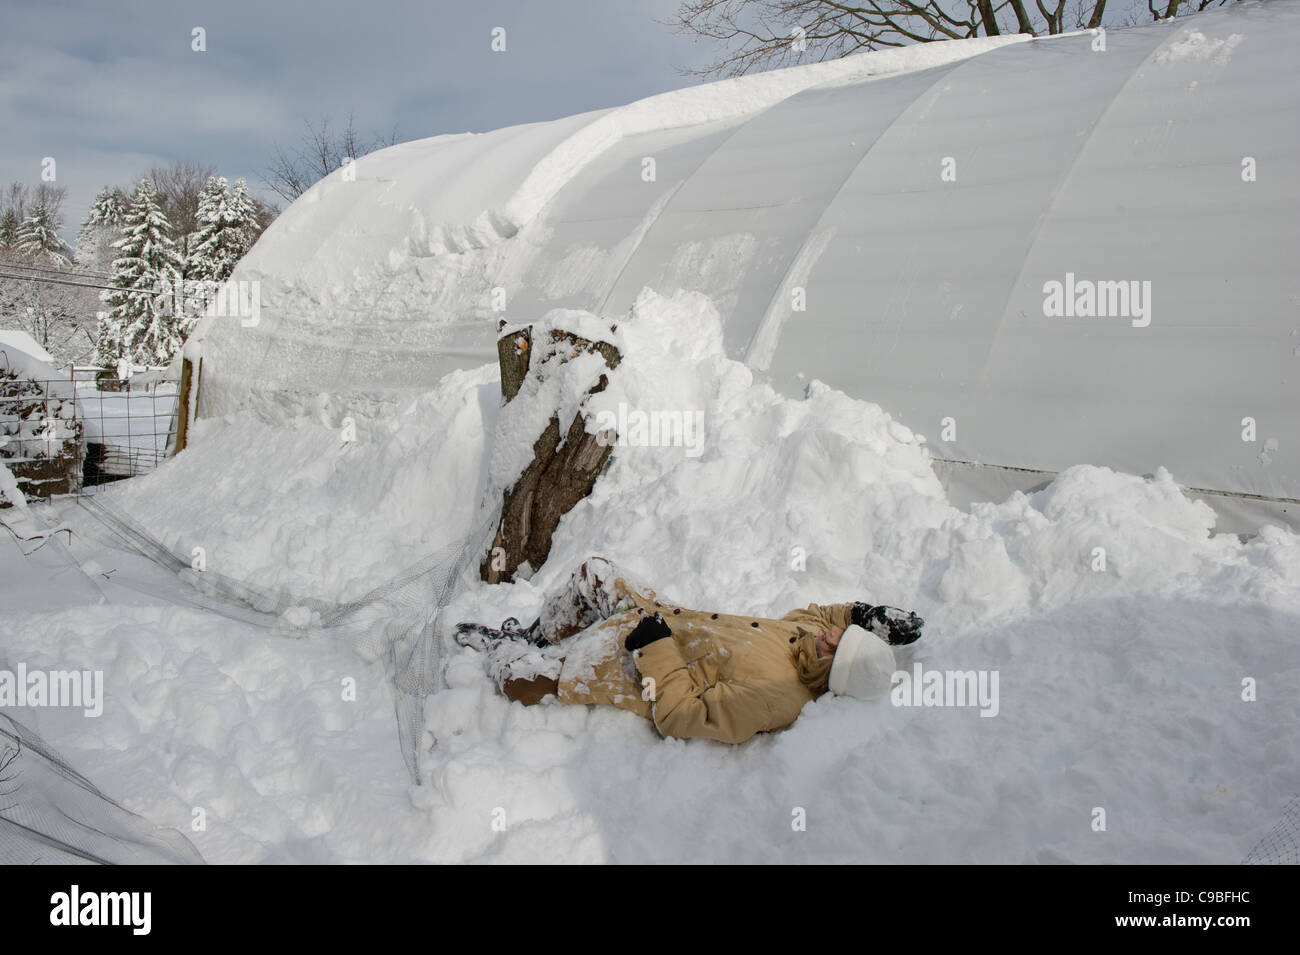 Pose de fille dans la neige sur une ferme Banque D'Images